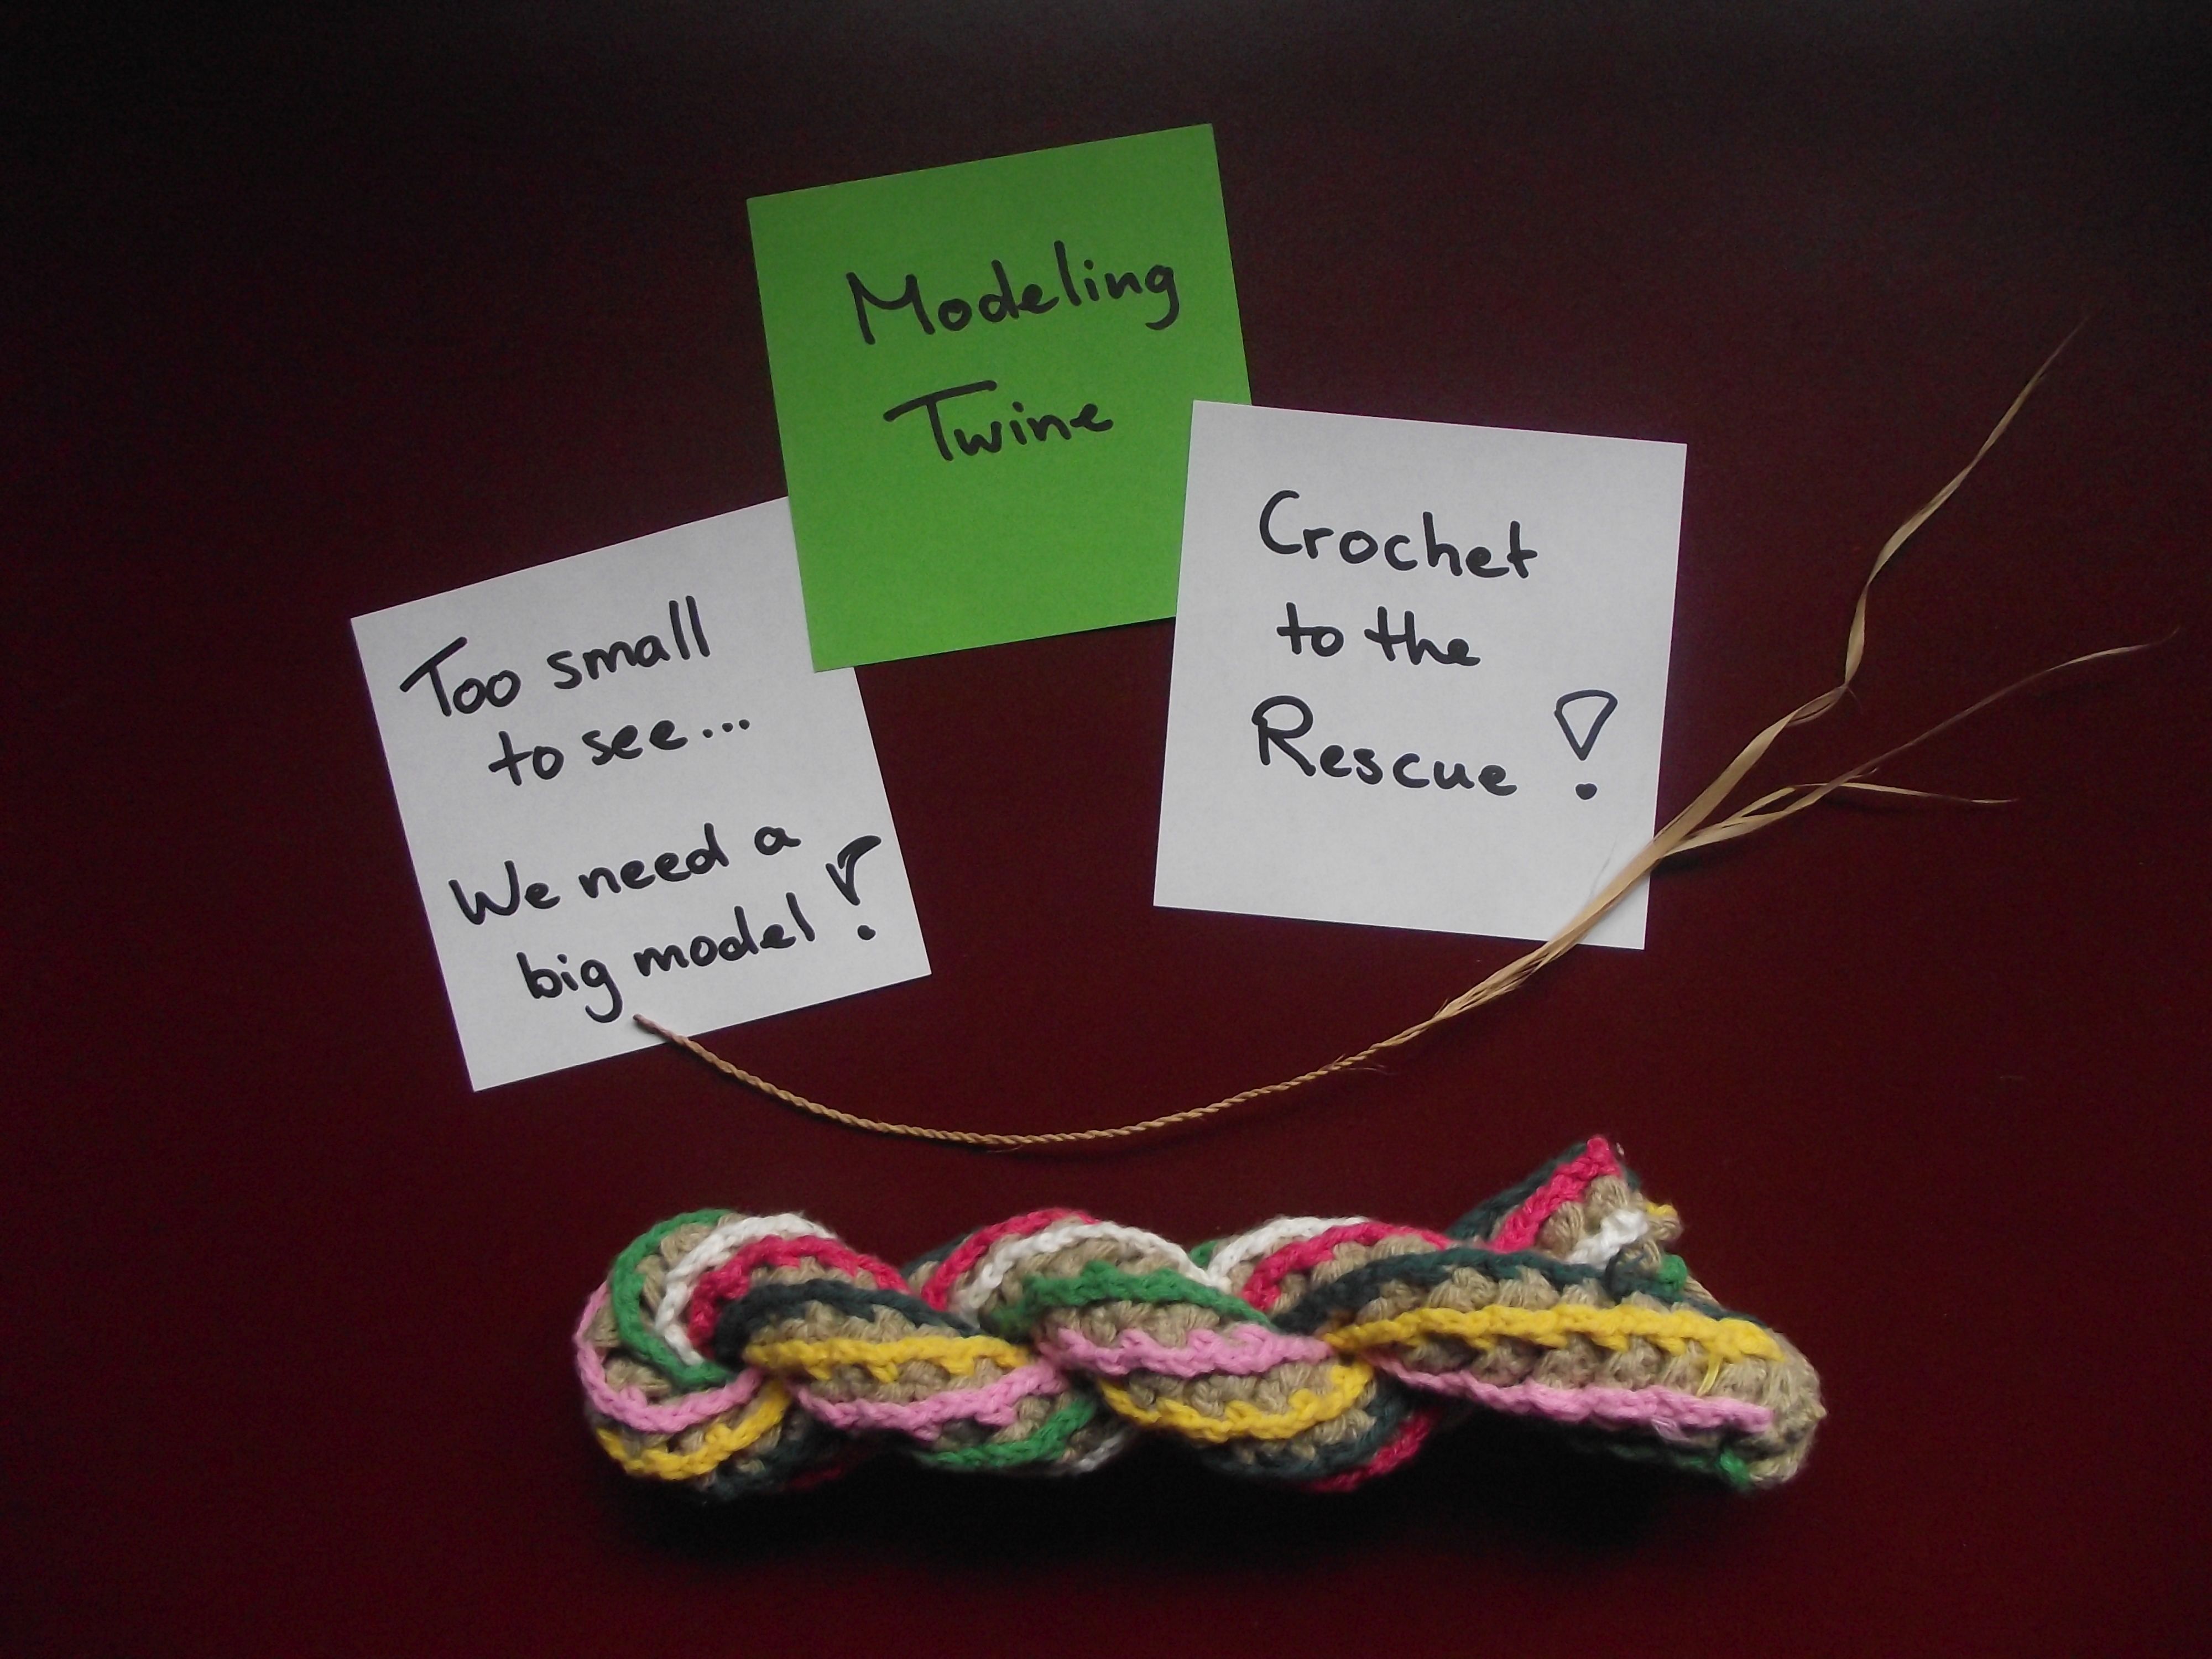 ModelingTwine - Crochet